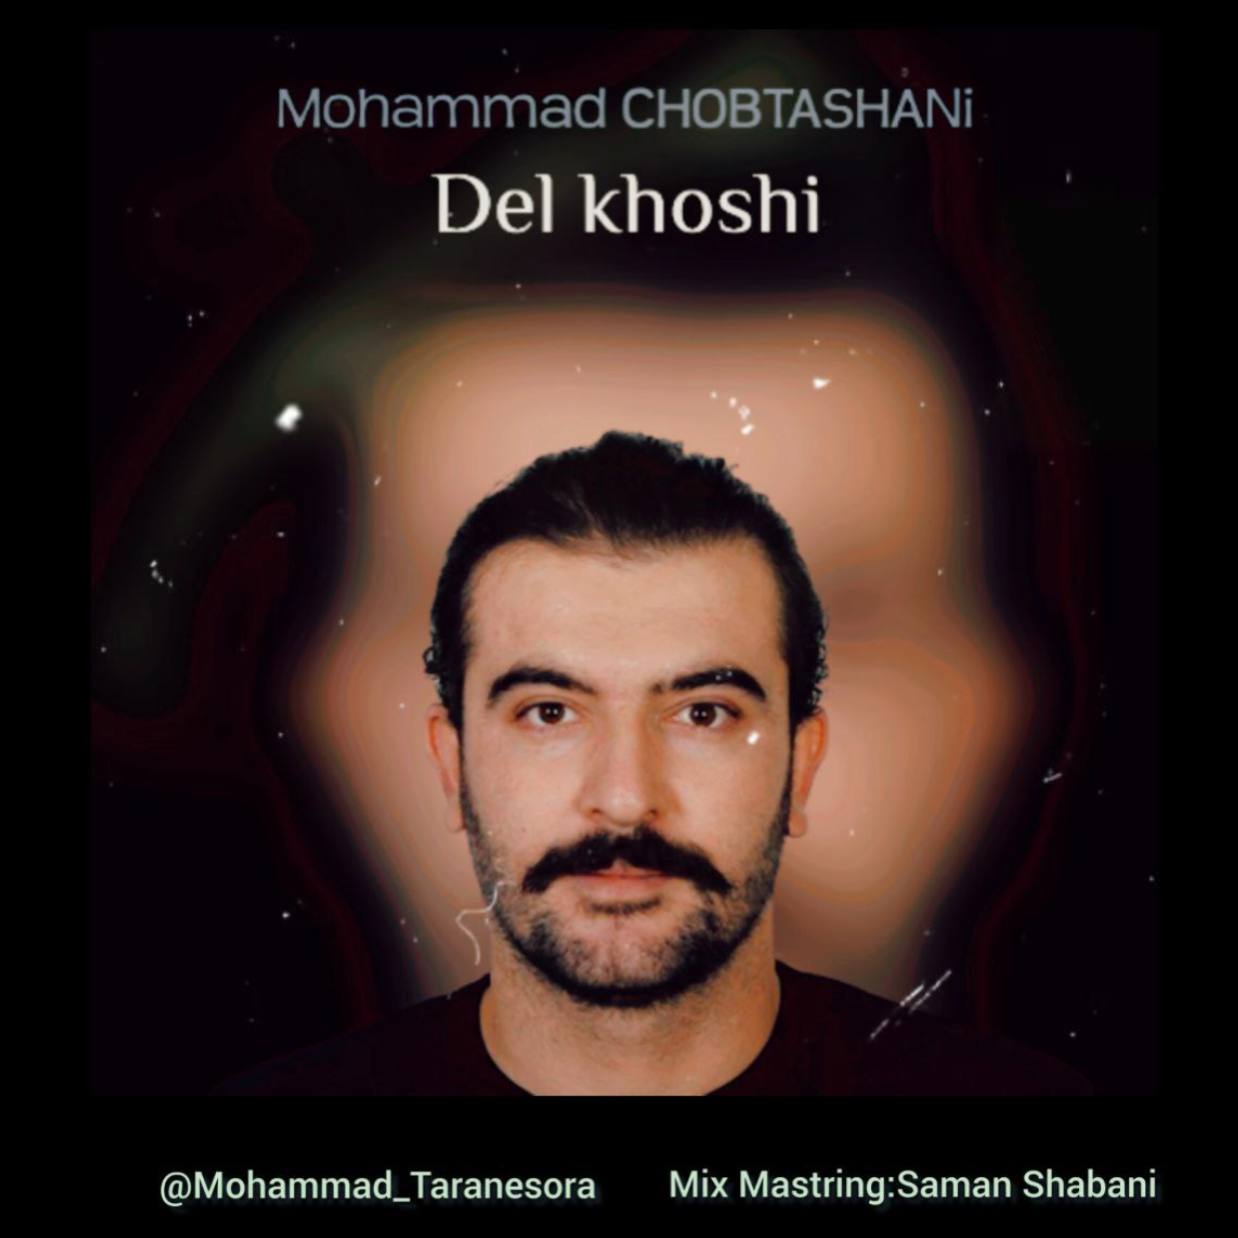 دانلود آهنگ جدید محمد چوبتشانی با عنوان دلخوشی